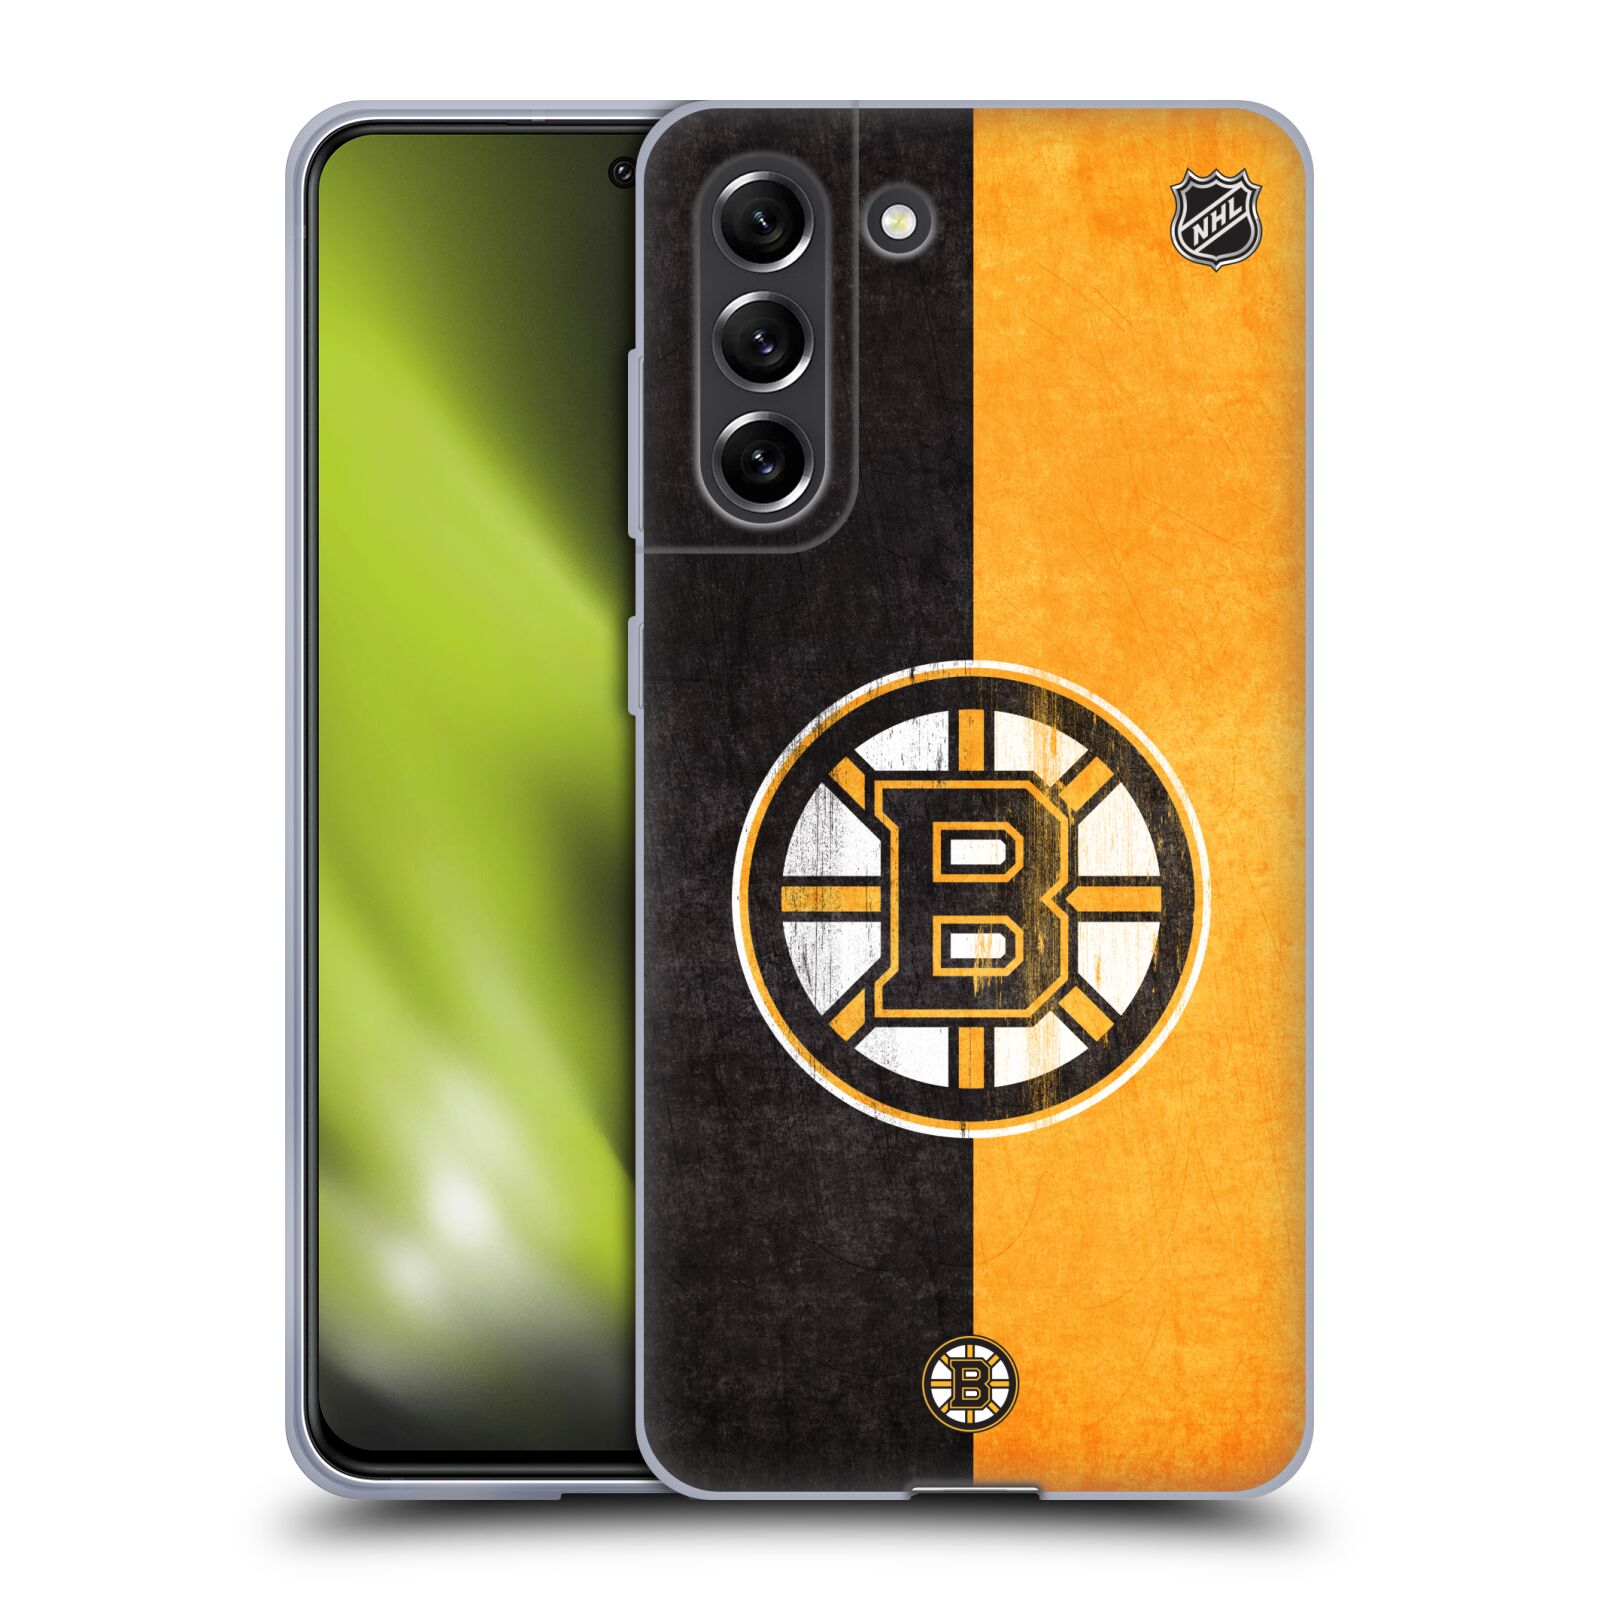 Silikonové pouzdro na mobil Samsung Galaxy S21 5G - NHL - Půlené logo Boston Bruins (Silikonový kryt, obal, pouzdro na mobilní telefon Samsung Galaxy S21 FE 5G s licencovaným motivem NHL - Půlené logo Boston Bruins)